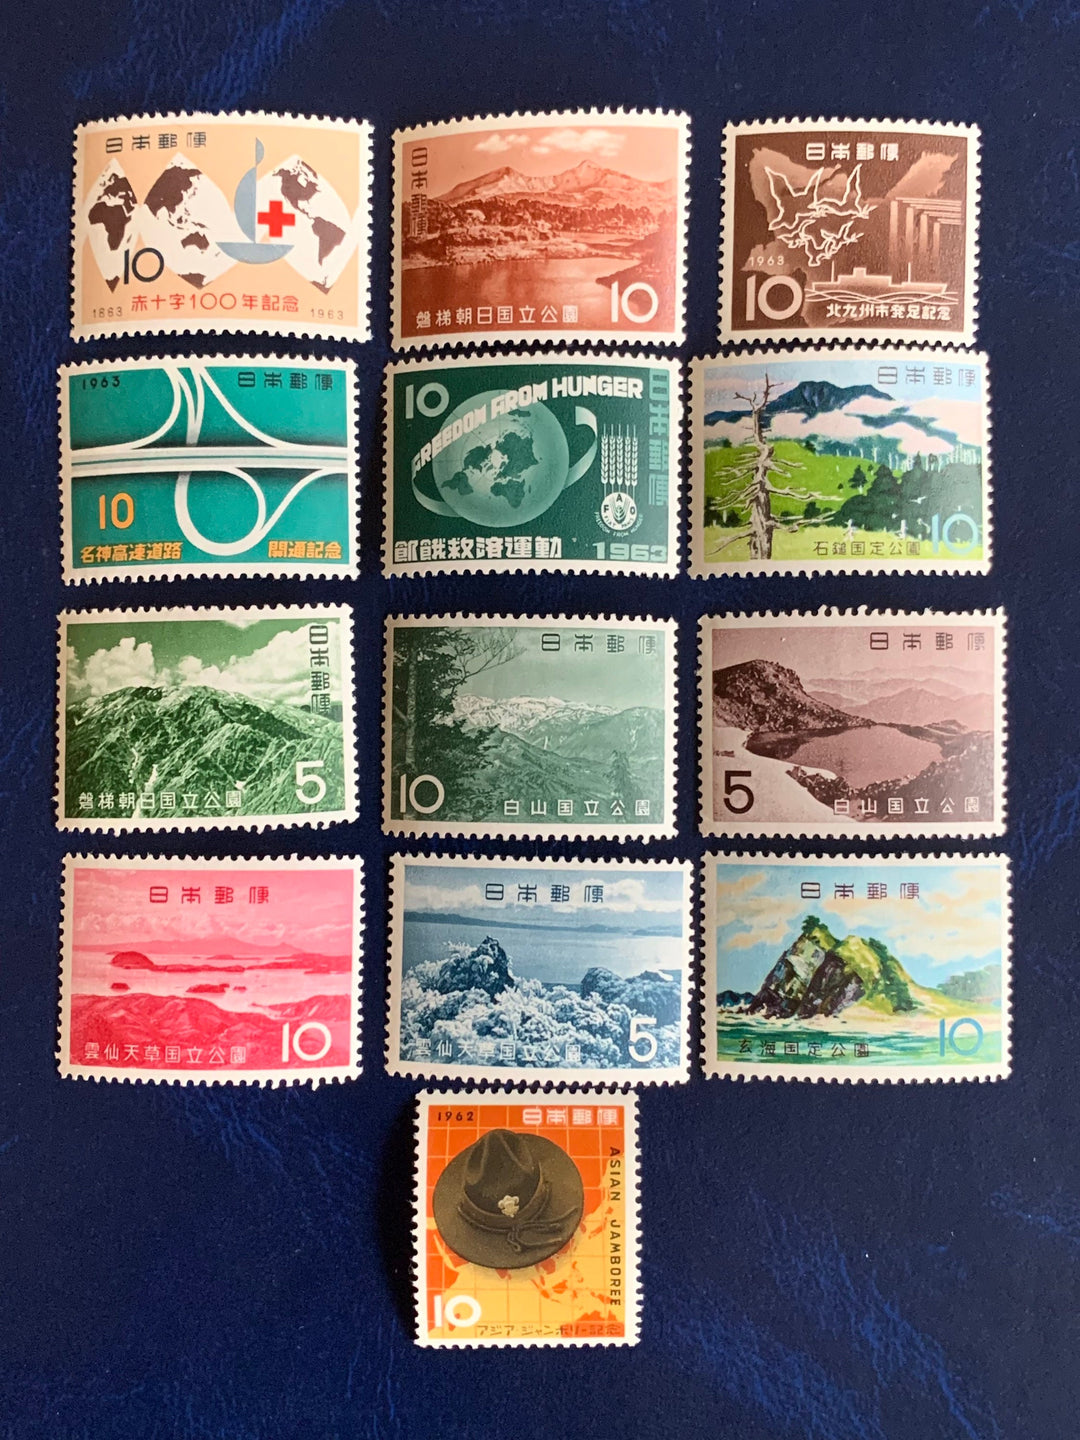 Japan- Original Vintage Postage Stamps- 1962-63